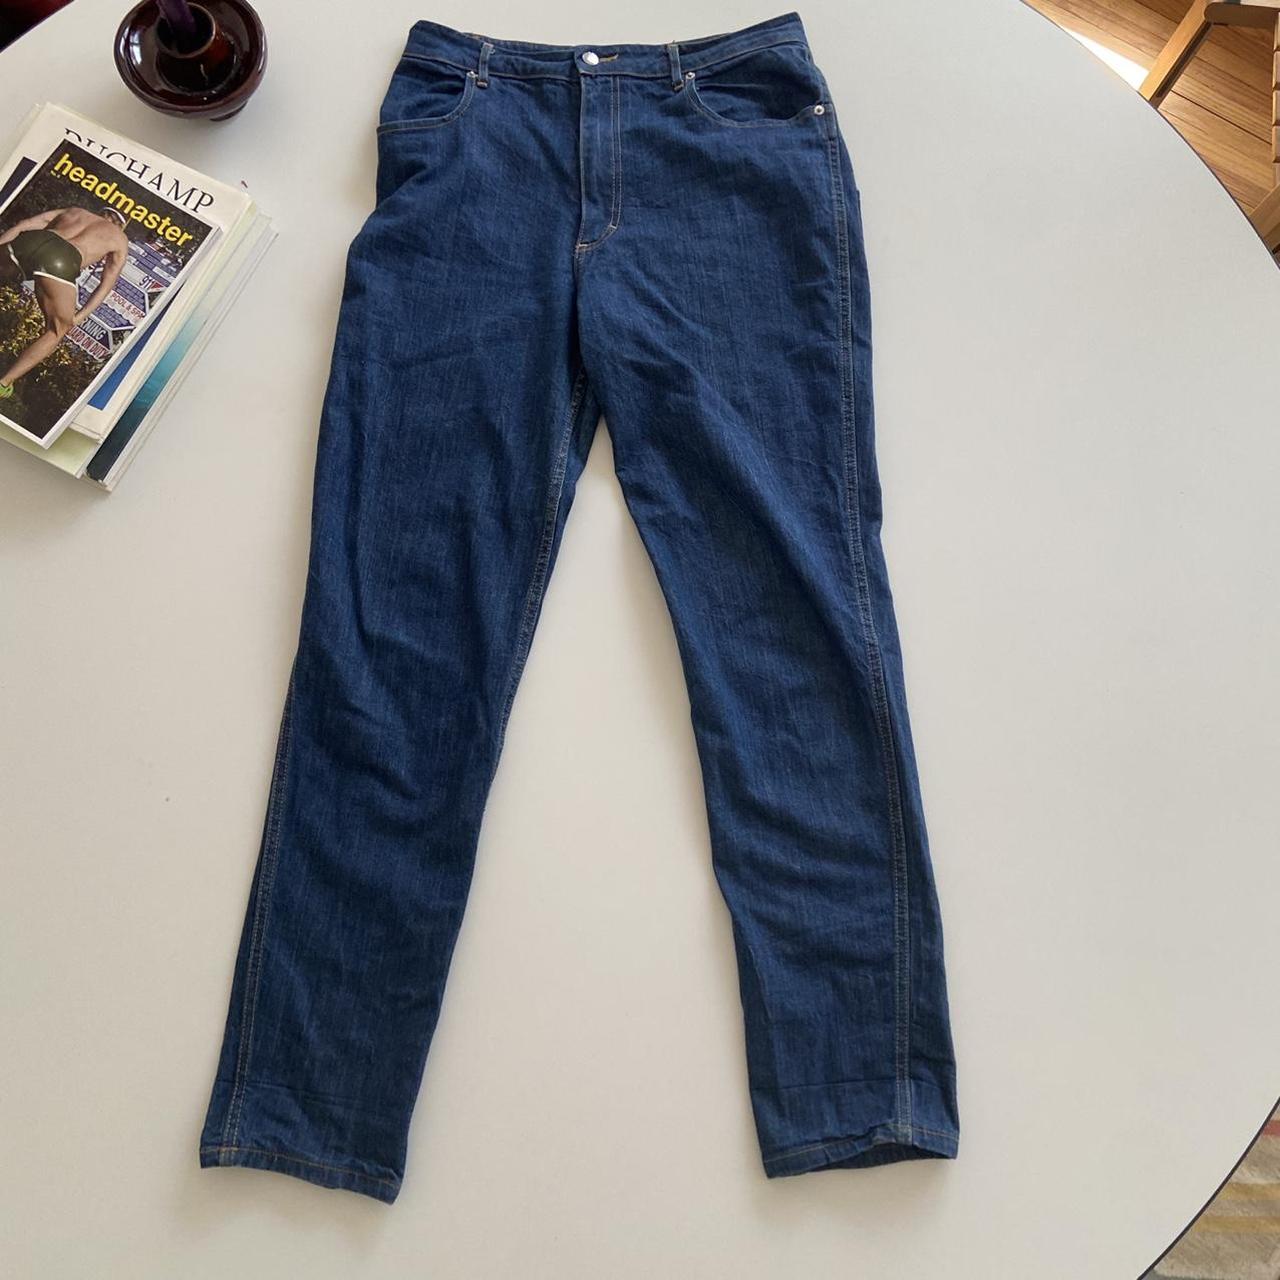 Eckhaus Latta Men's Jeans